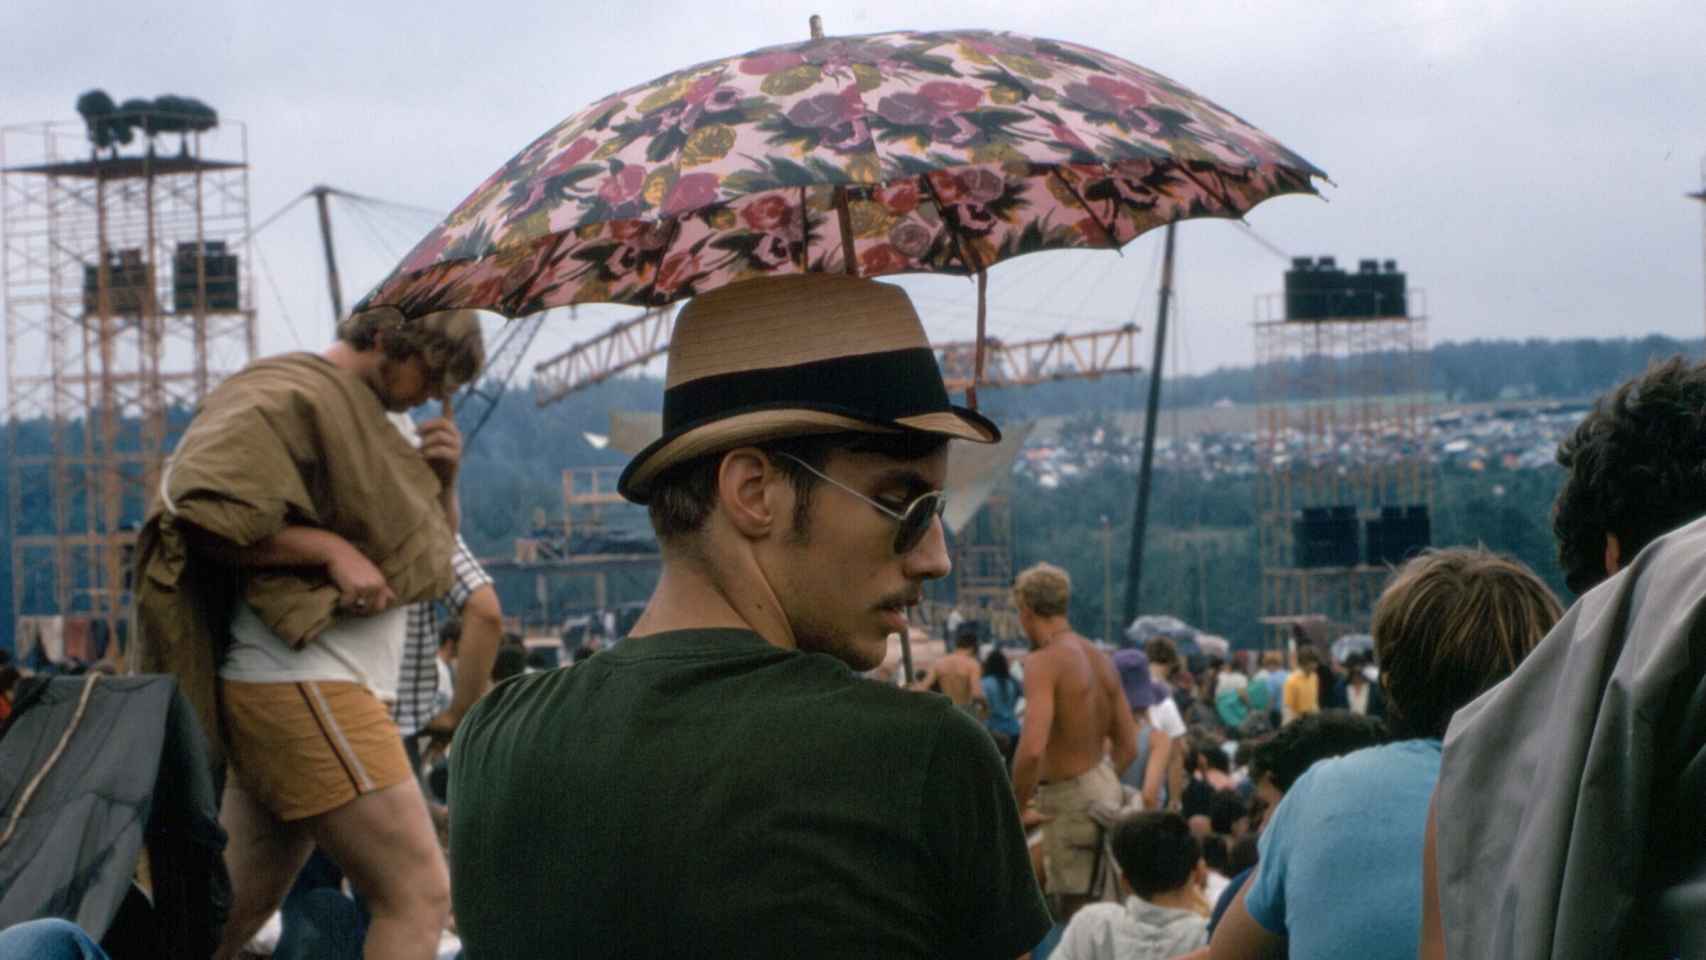 El Festival de Woodstock de agosto de 1969 se puede considerar el punto de partida y cristalización del movimiento arcoíris.